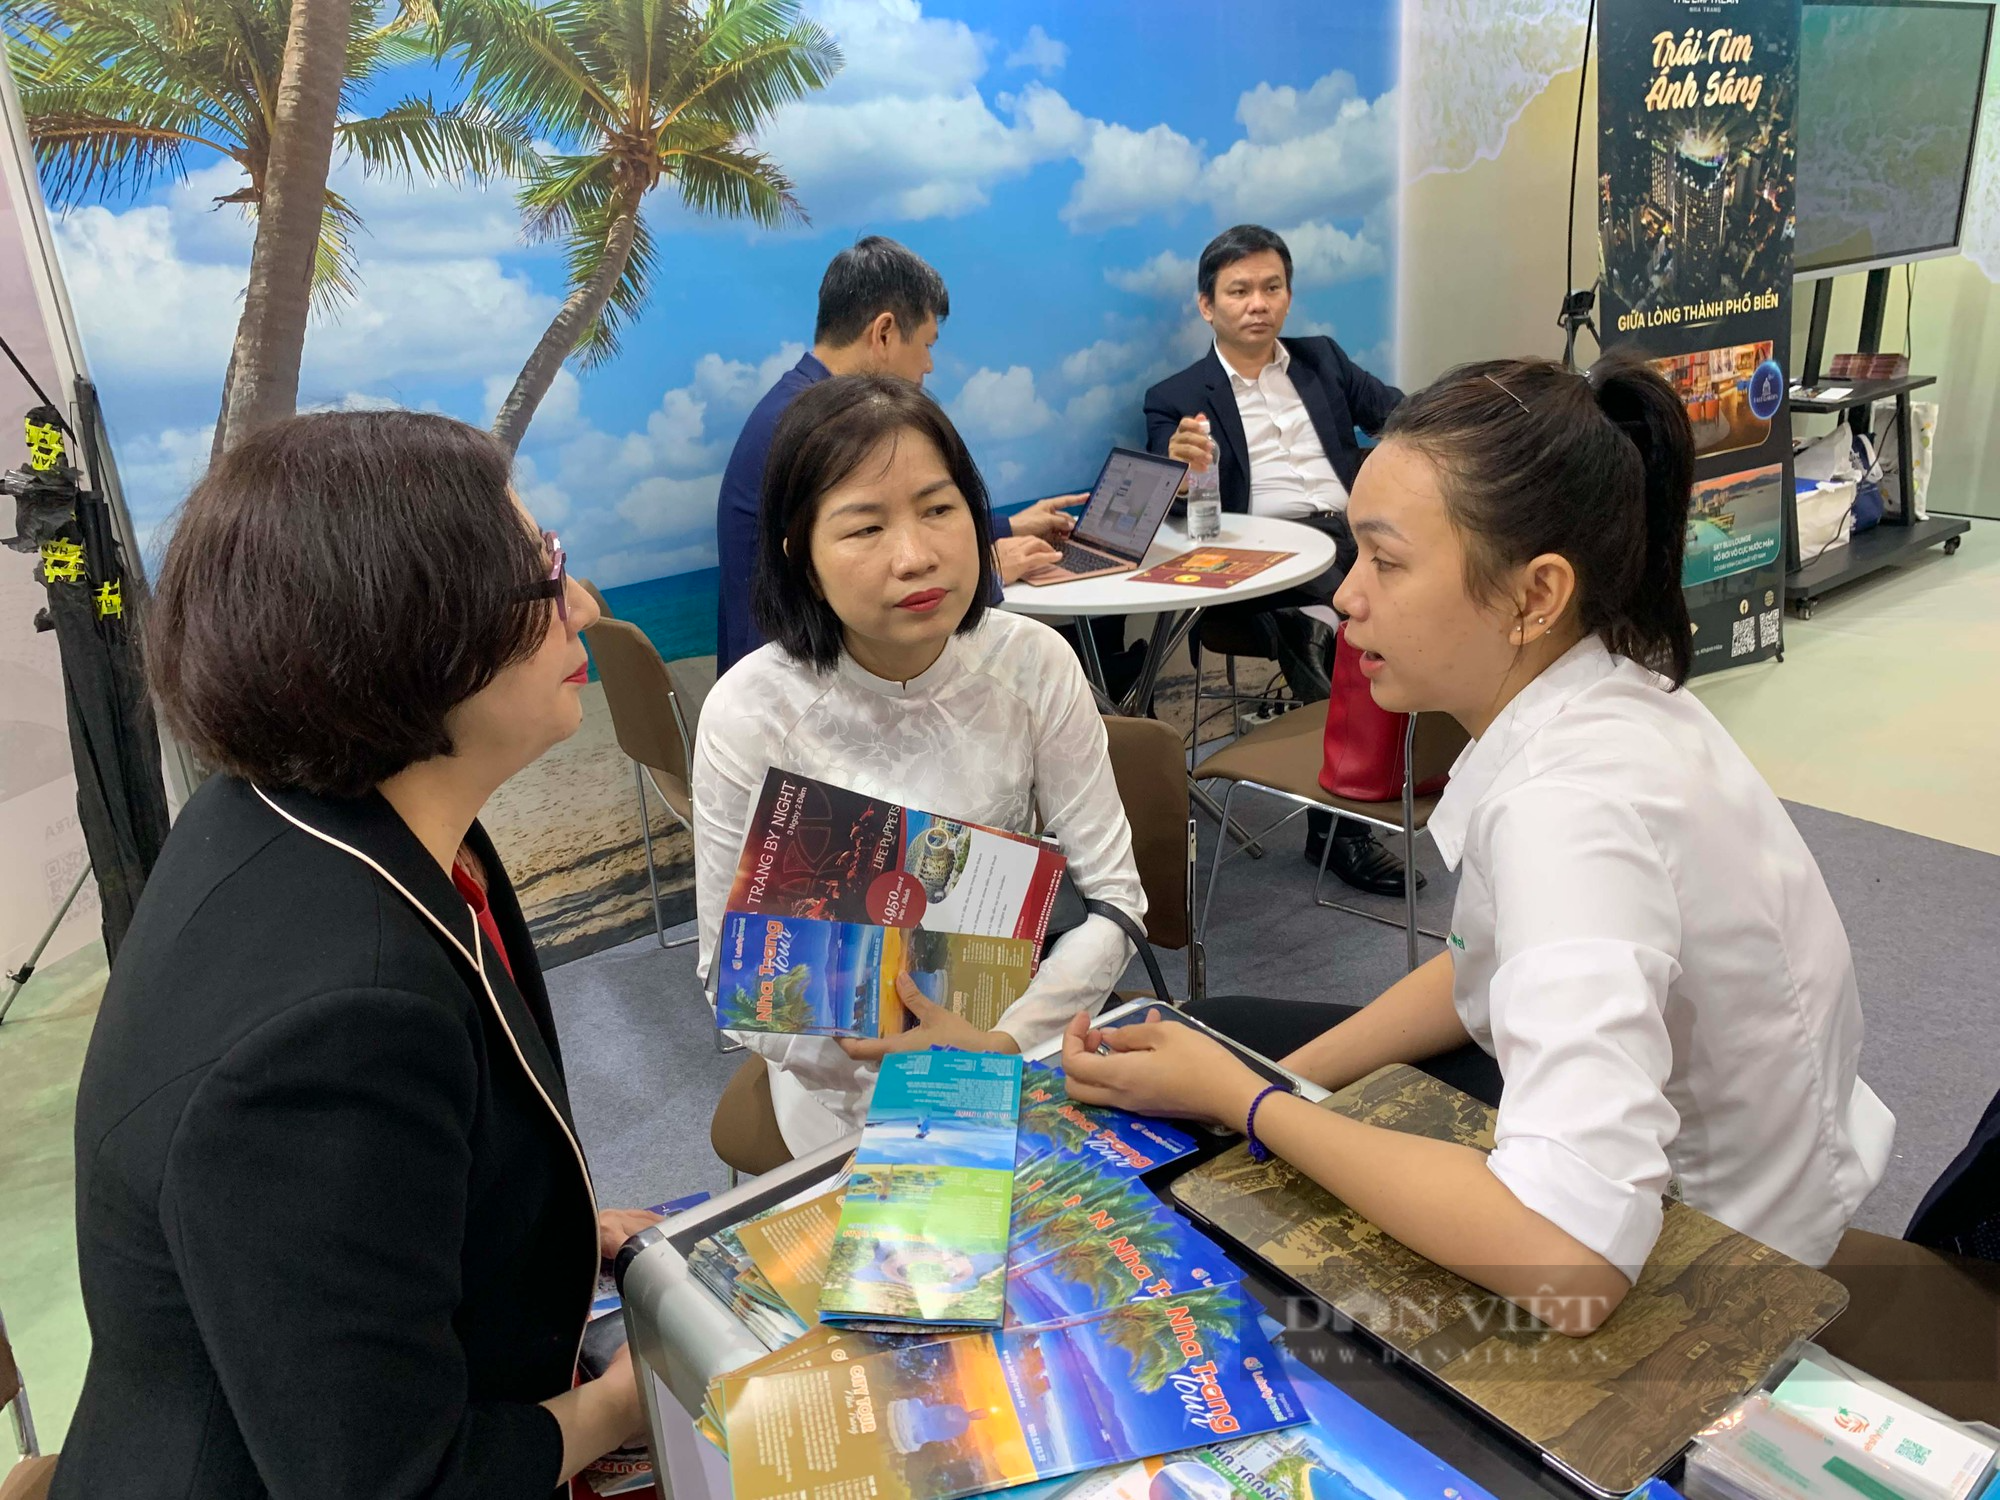 Hàng trăm combo chỉ từ 3 triệu đồng và tour trọn gói  được chào bán tại Hội chợ du lịch lớn Việt Nam - Ảnh 5.